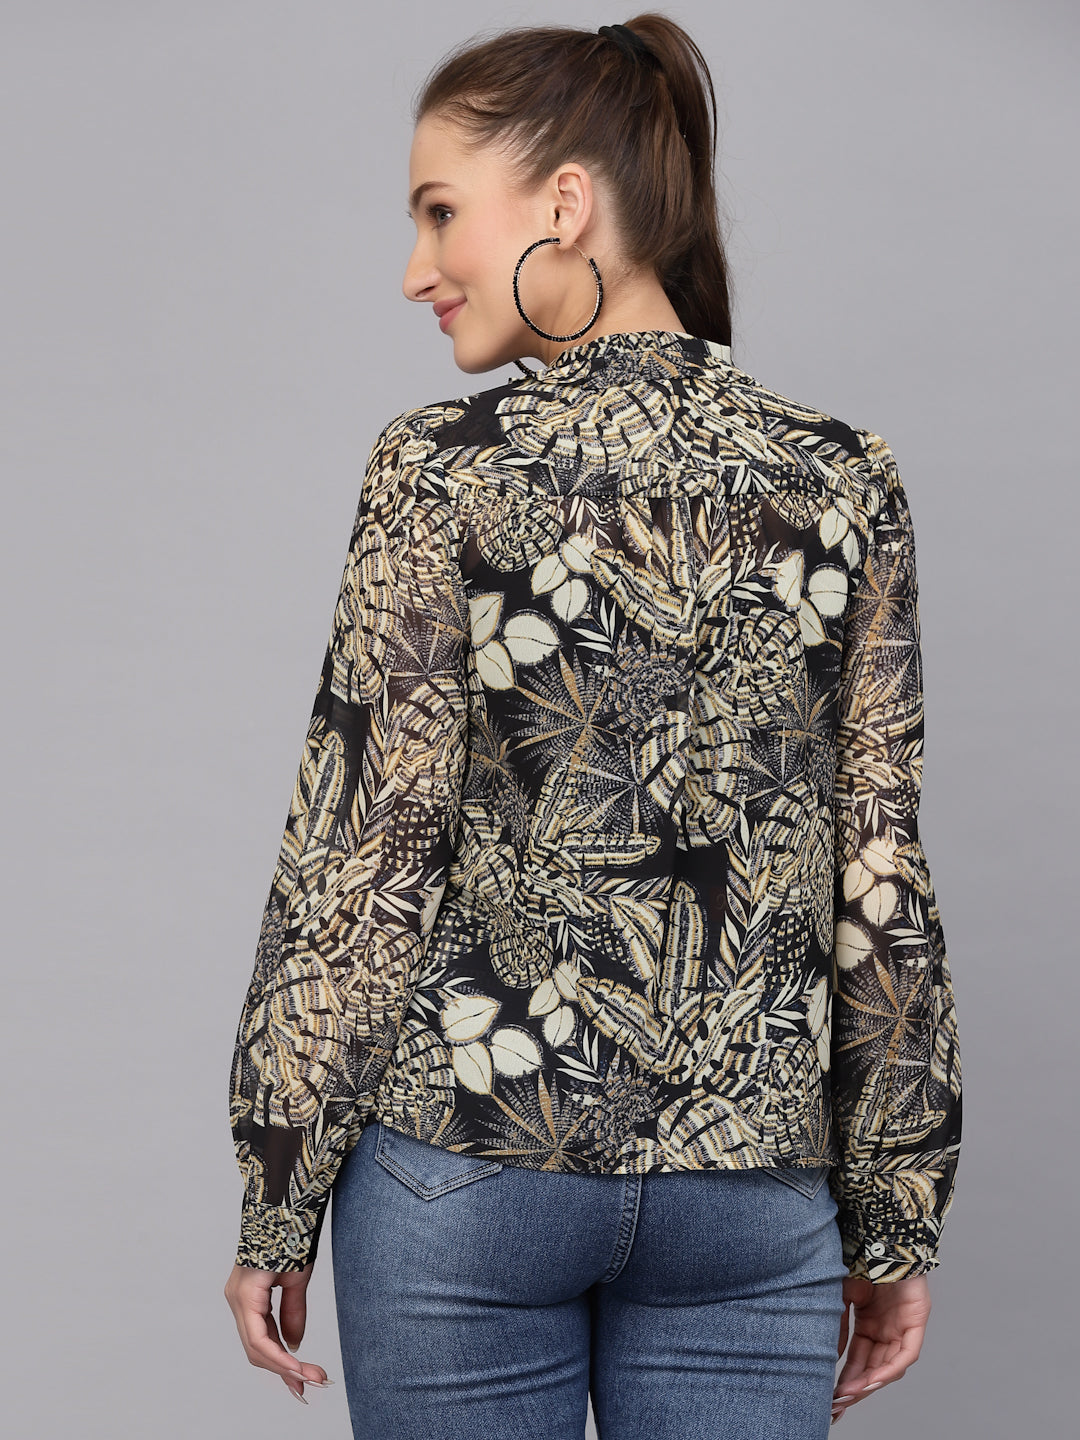 Valbone Women’s Black & Beige Georgette Floral Printed Shirt Full Sleeves